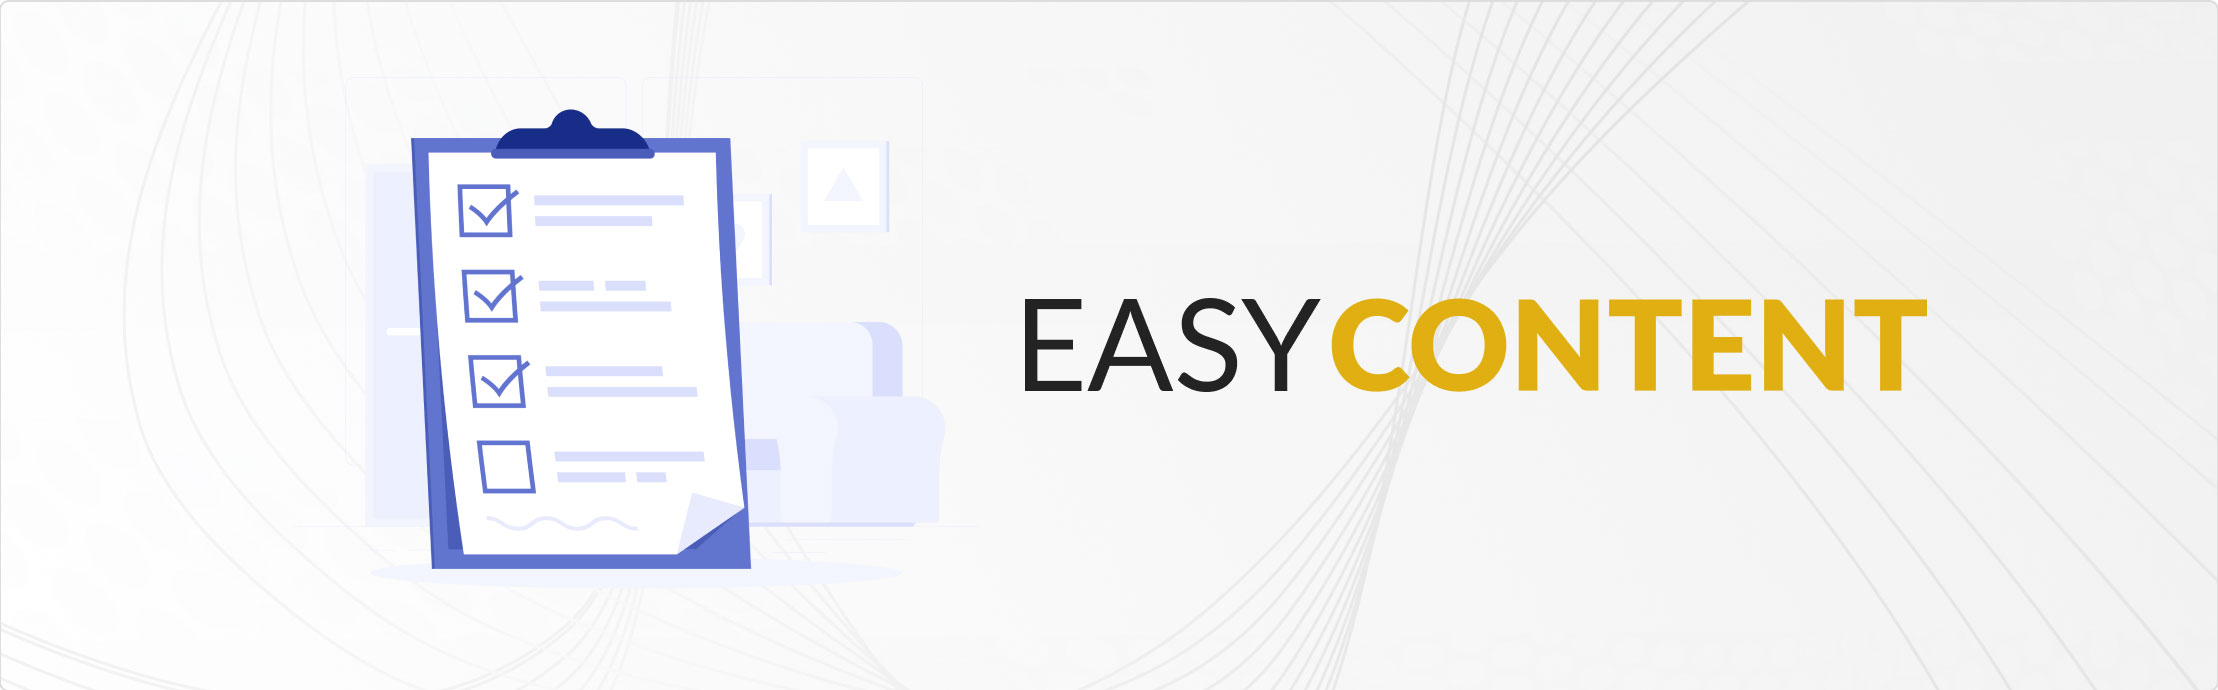 EasyContent vs Google Docs